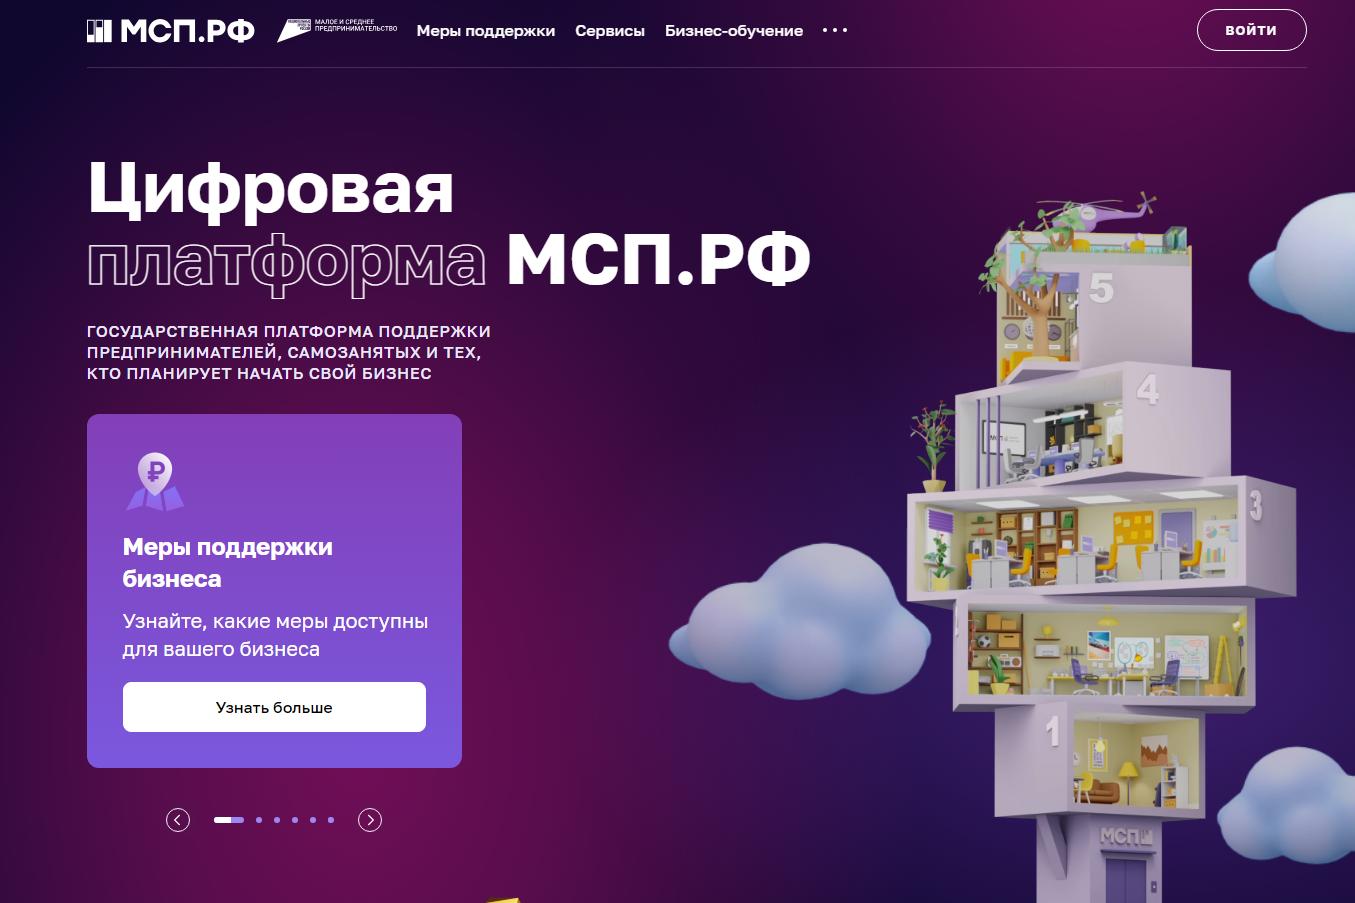 Нижегородский бизнес воспользовался платформой МСП.РФ более 80 тысяч раз